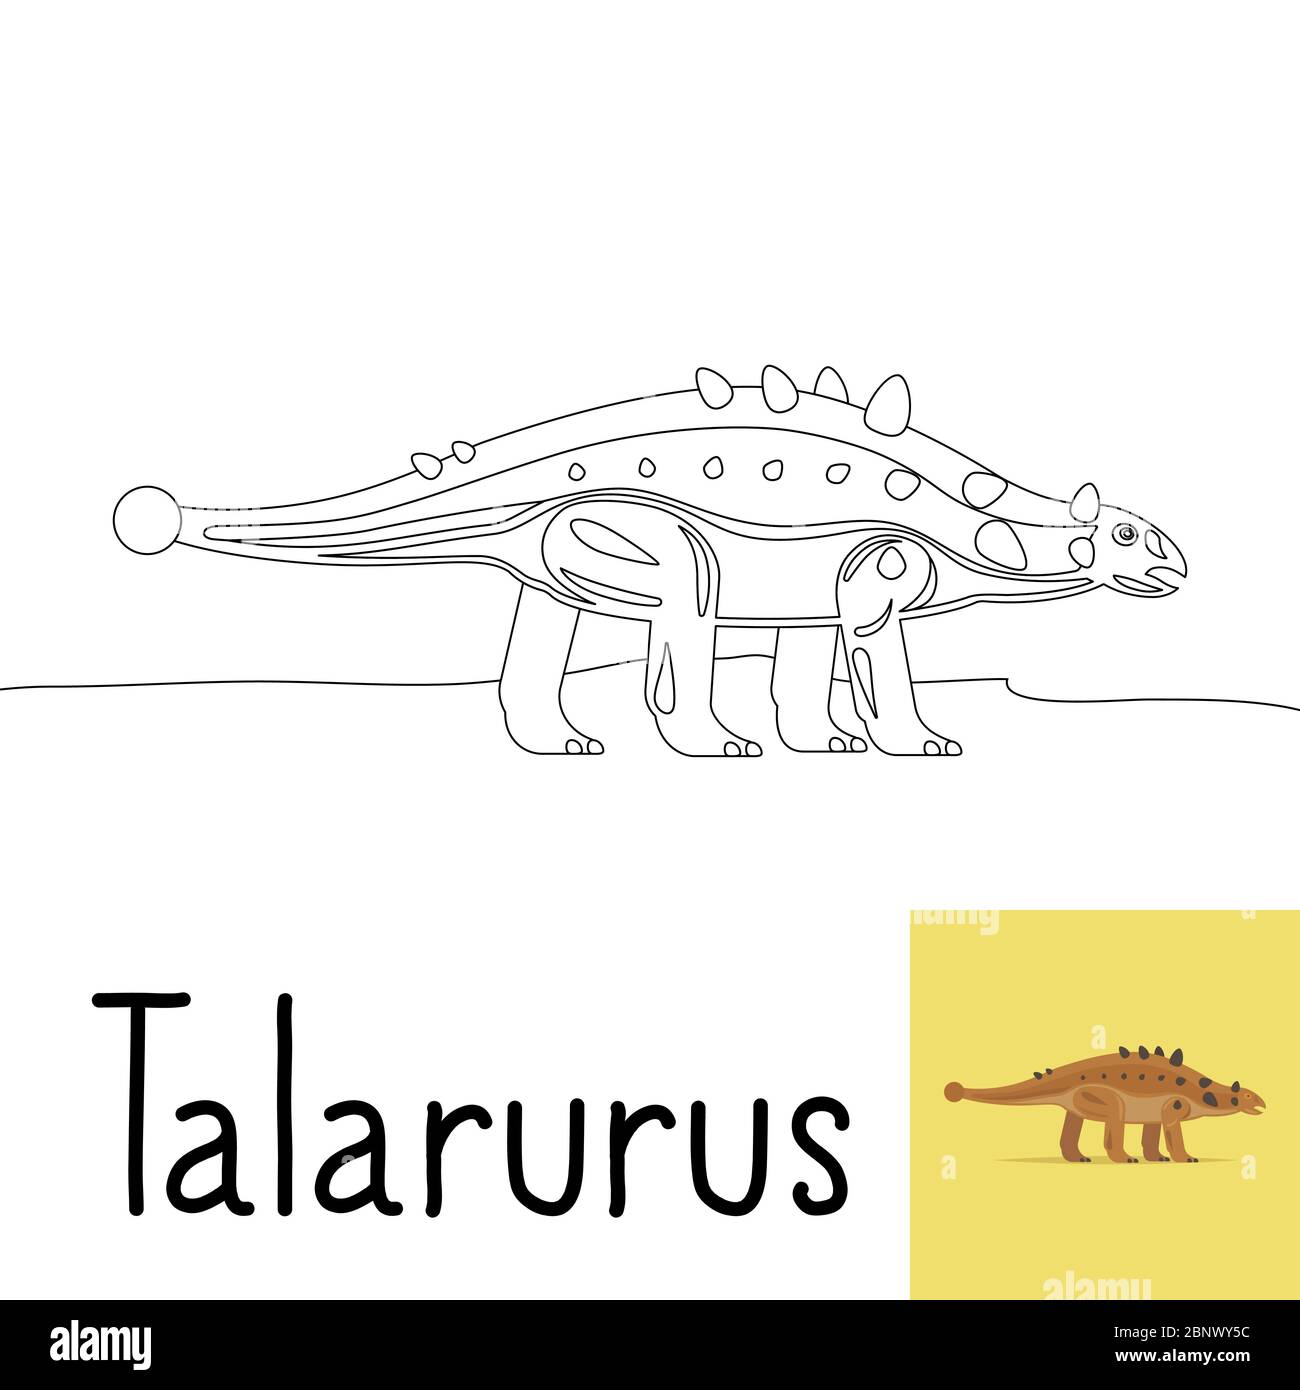 Pagina da colorare per bambini con dinosauro Talarurus e anteprima colorata. Illustrazione vettoriale Illustrazione Vettoriale